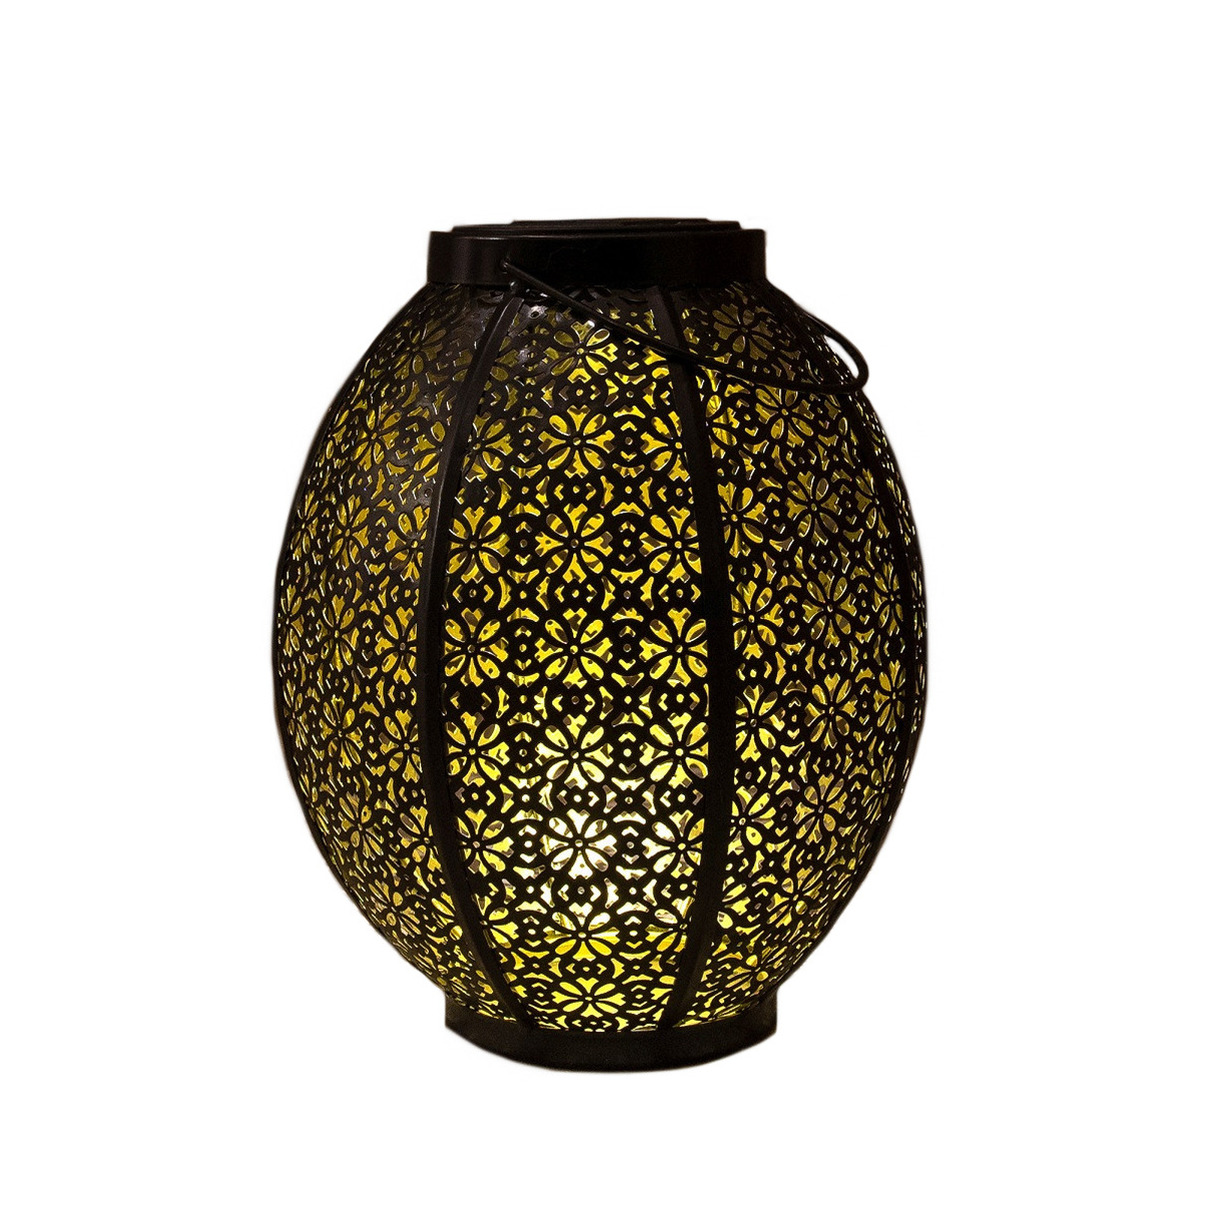 1x stuks tuindecoratie solar lantaarns lampen zwart-goud metaal 23 cm